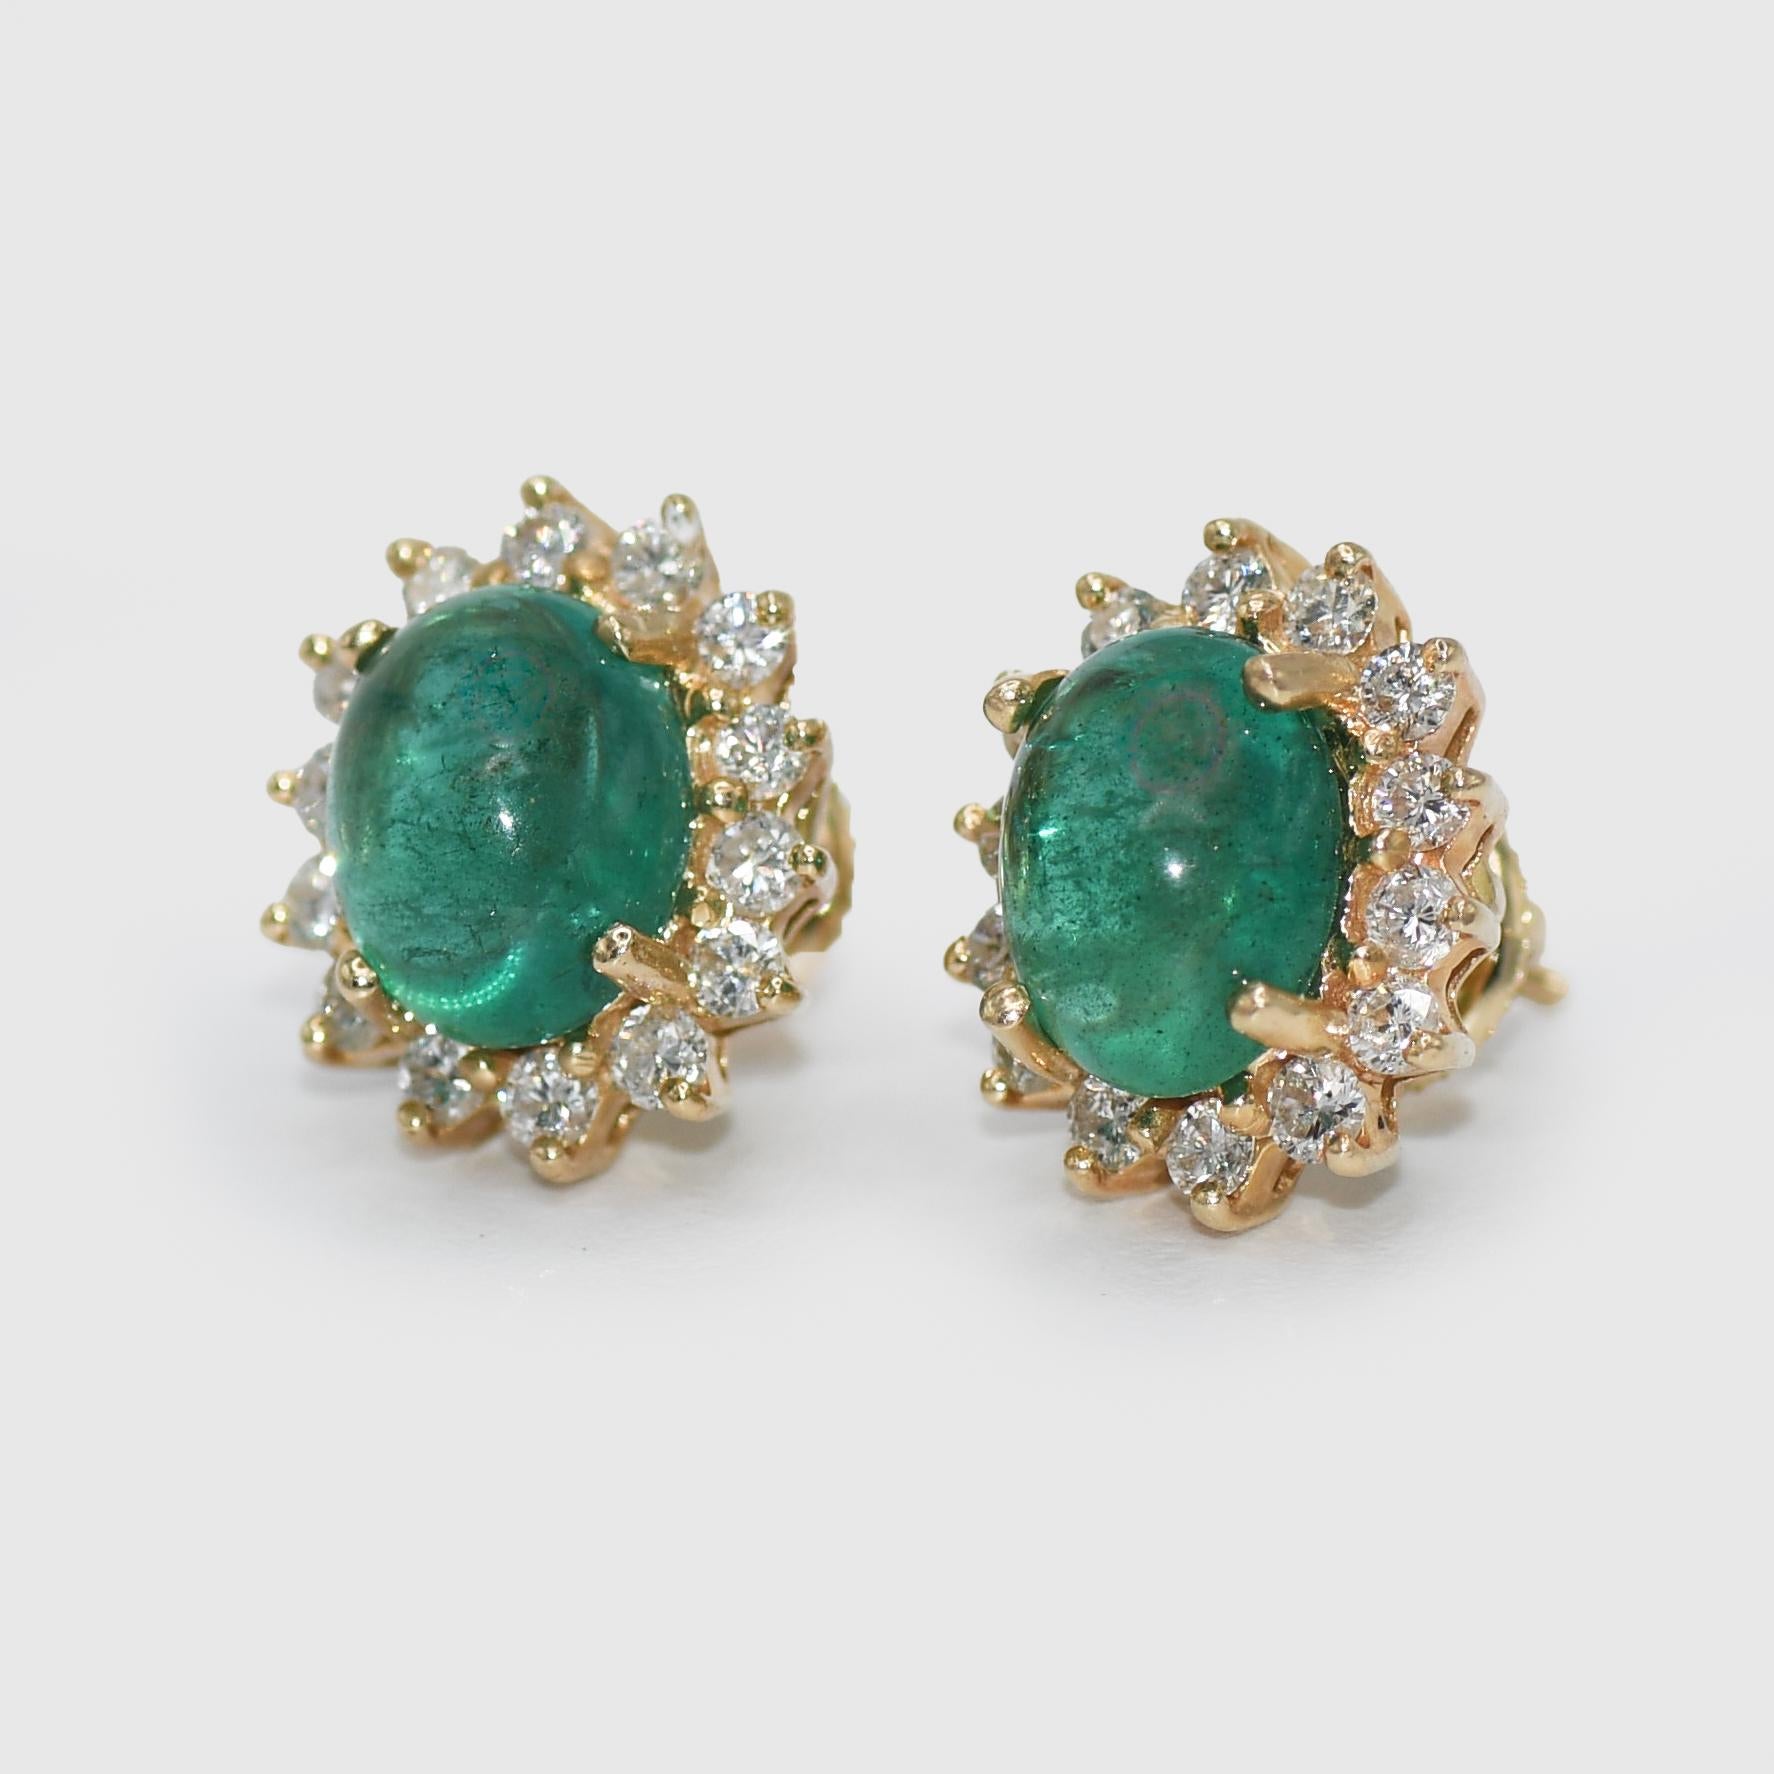 14K Gelbgold Cabochon Smaragd & Diamant-Ohrringe 4,8g
Damen Smaragd und Diamant-Ohrringe mit 14 Karat gelber Fassung.
Gestempelt 585 und wiegen 4,8 Gramm Bruttogewicht.
Die Smaragde im Cabochon-Schliff sind natürlich. 
Die Smaragde sind eine